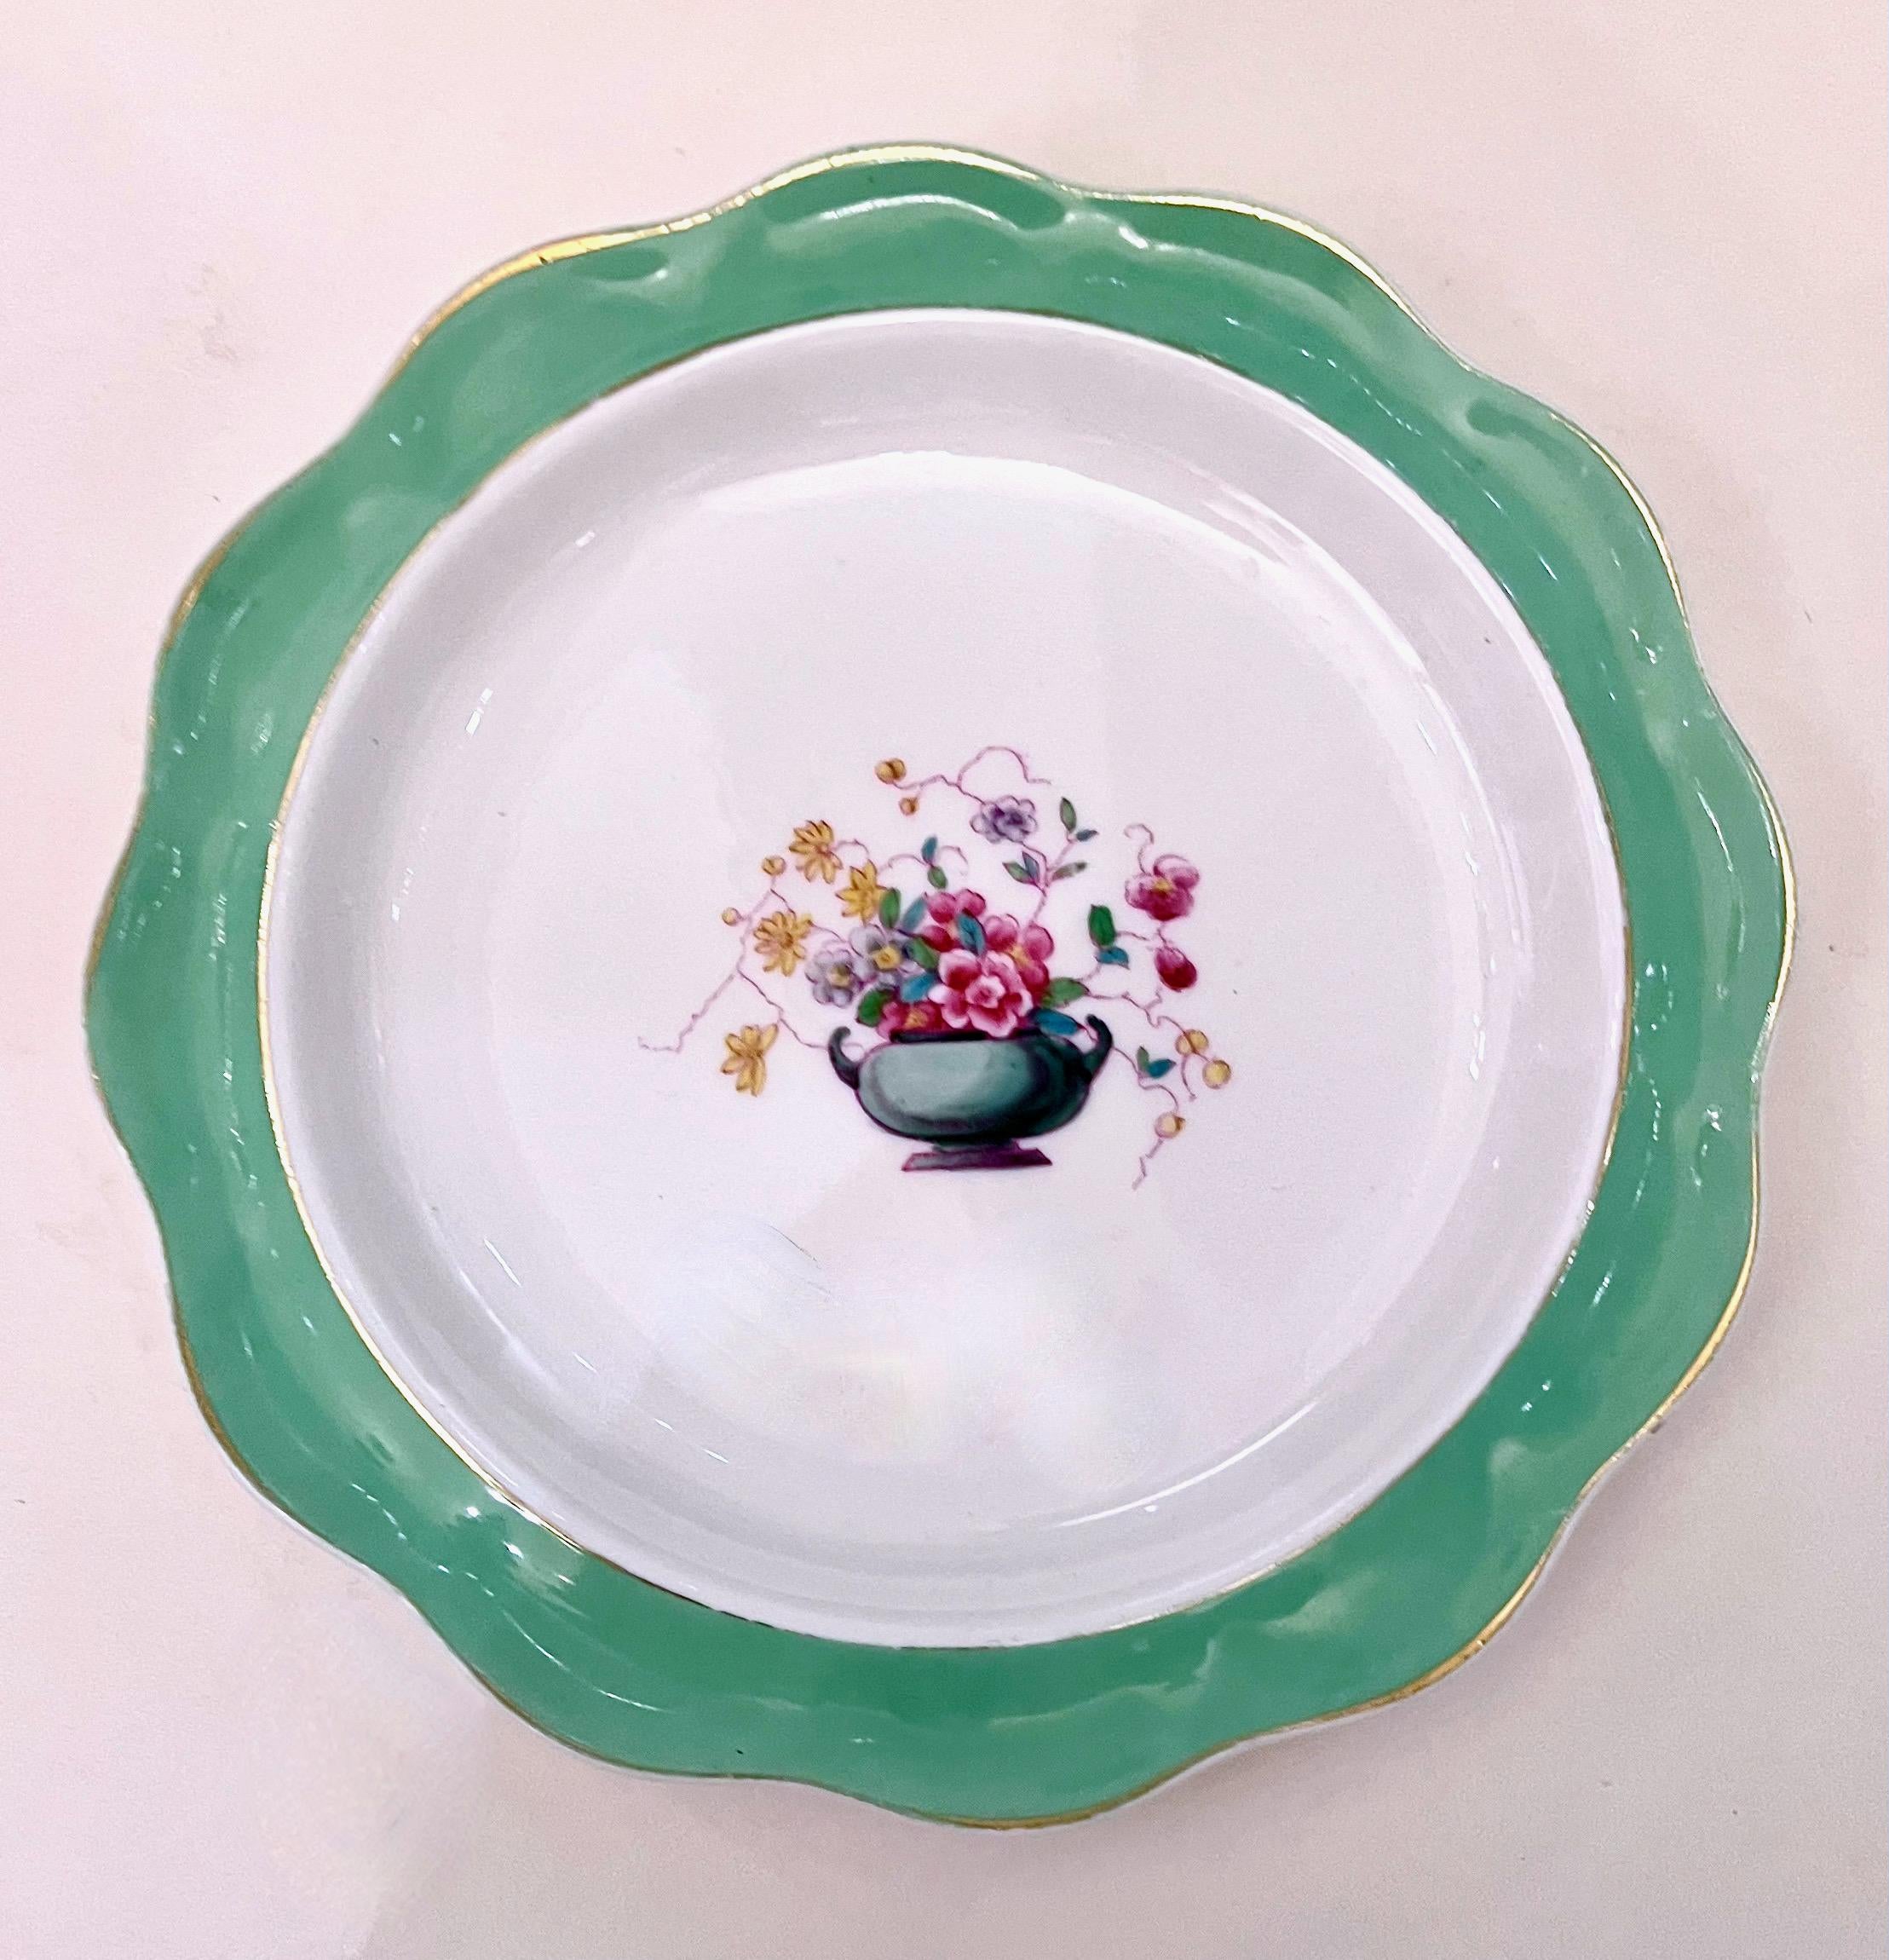 Voici un charmant ensemble de 14 assiettes à déjeuner Royal Doulton peintes à la main et datant du début du 20e siècle. Le bord des assiettes est décoré d'une magnifique bande peinte à la main d'un turquoise subtil et d'une gerbe florale peinte à la